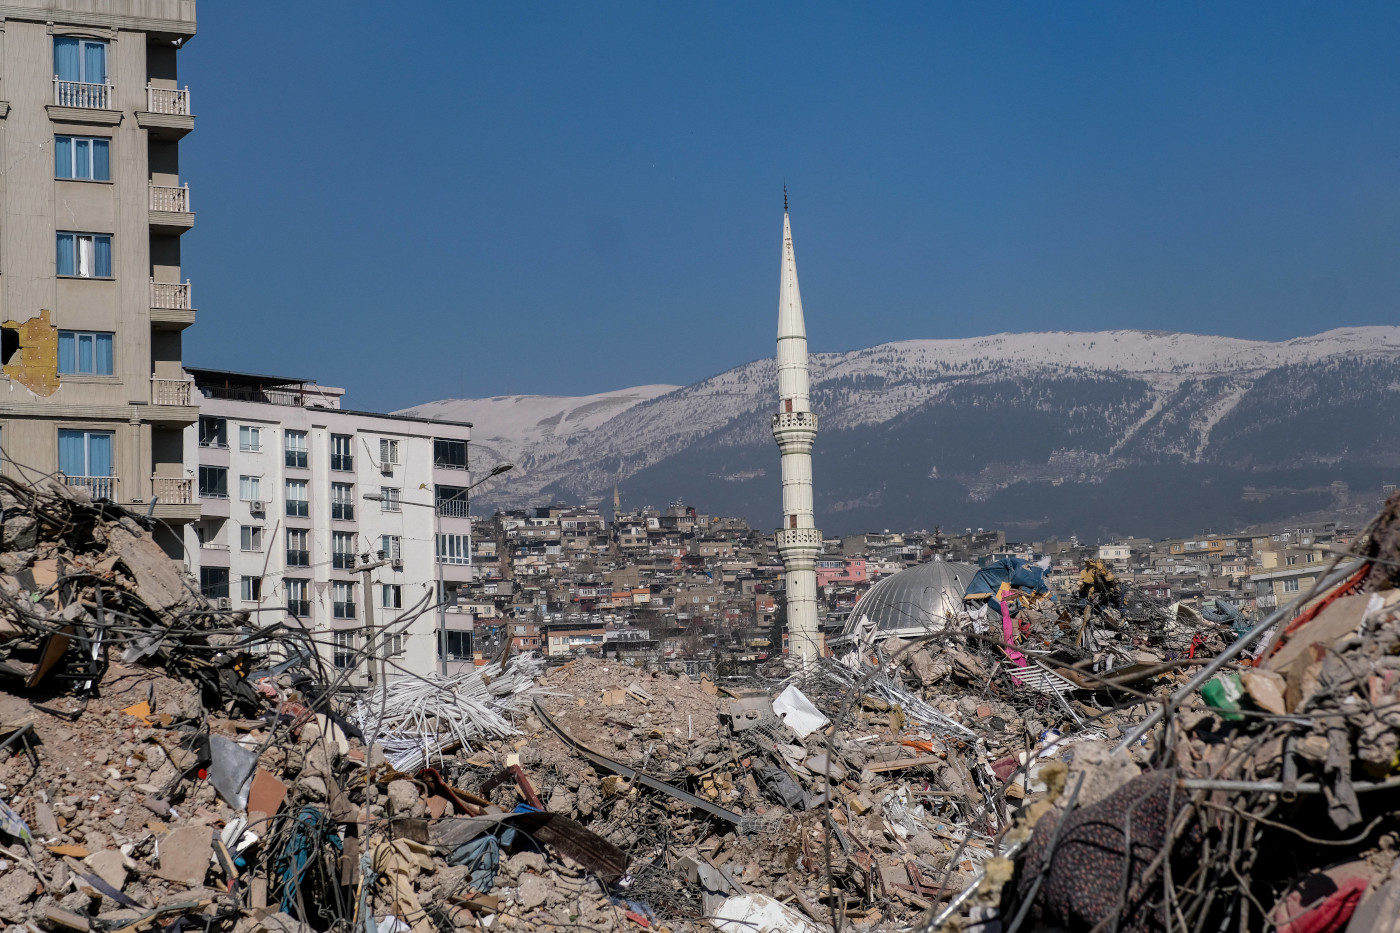 Kahramanmaras in der Türkei liegt mitten im Katastrophengebiet. Inmitten der Trümmer steht eine Moschee, augenscheinlich unbeschadet. Erfahre hier, wie Du den Menschen vor Ort helfen kannst.